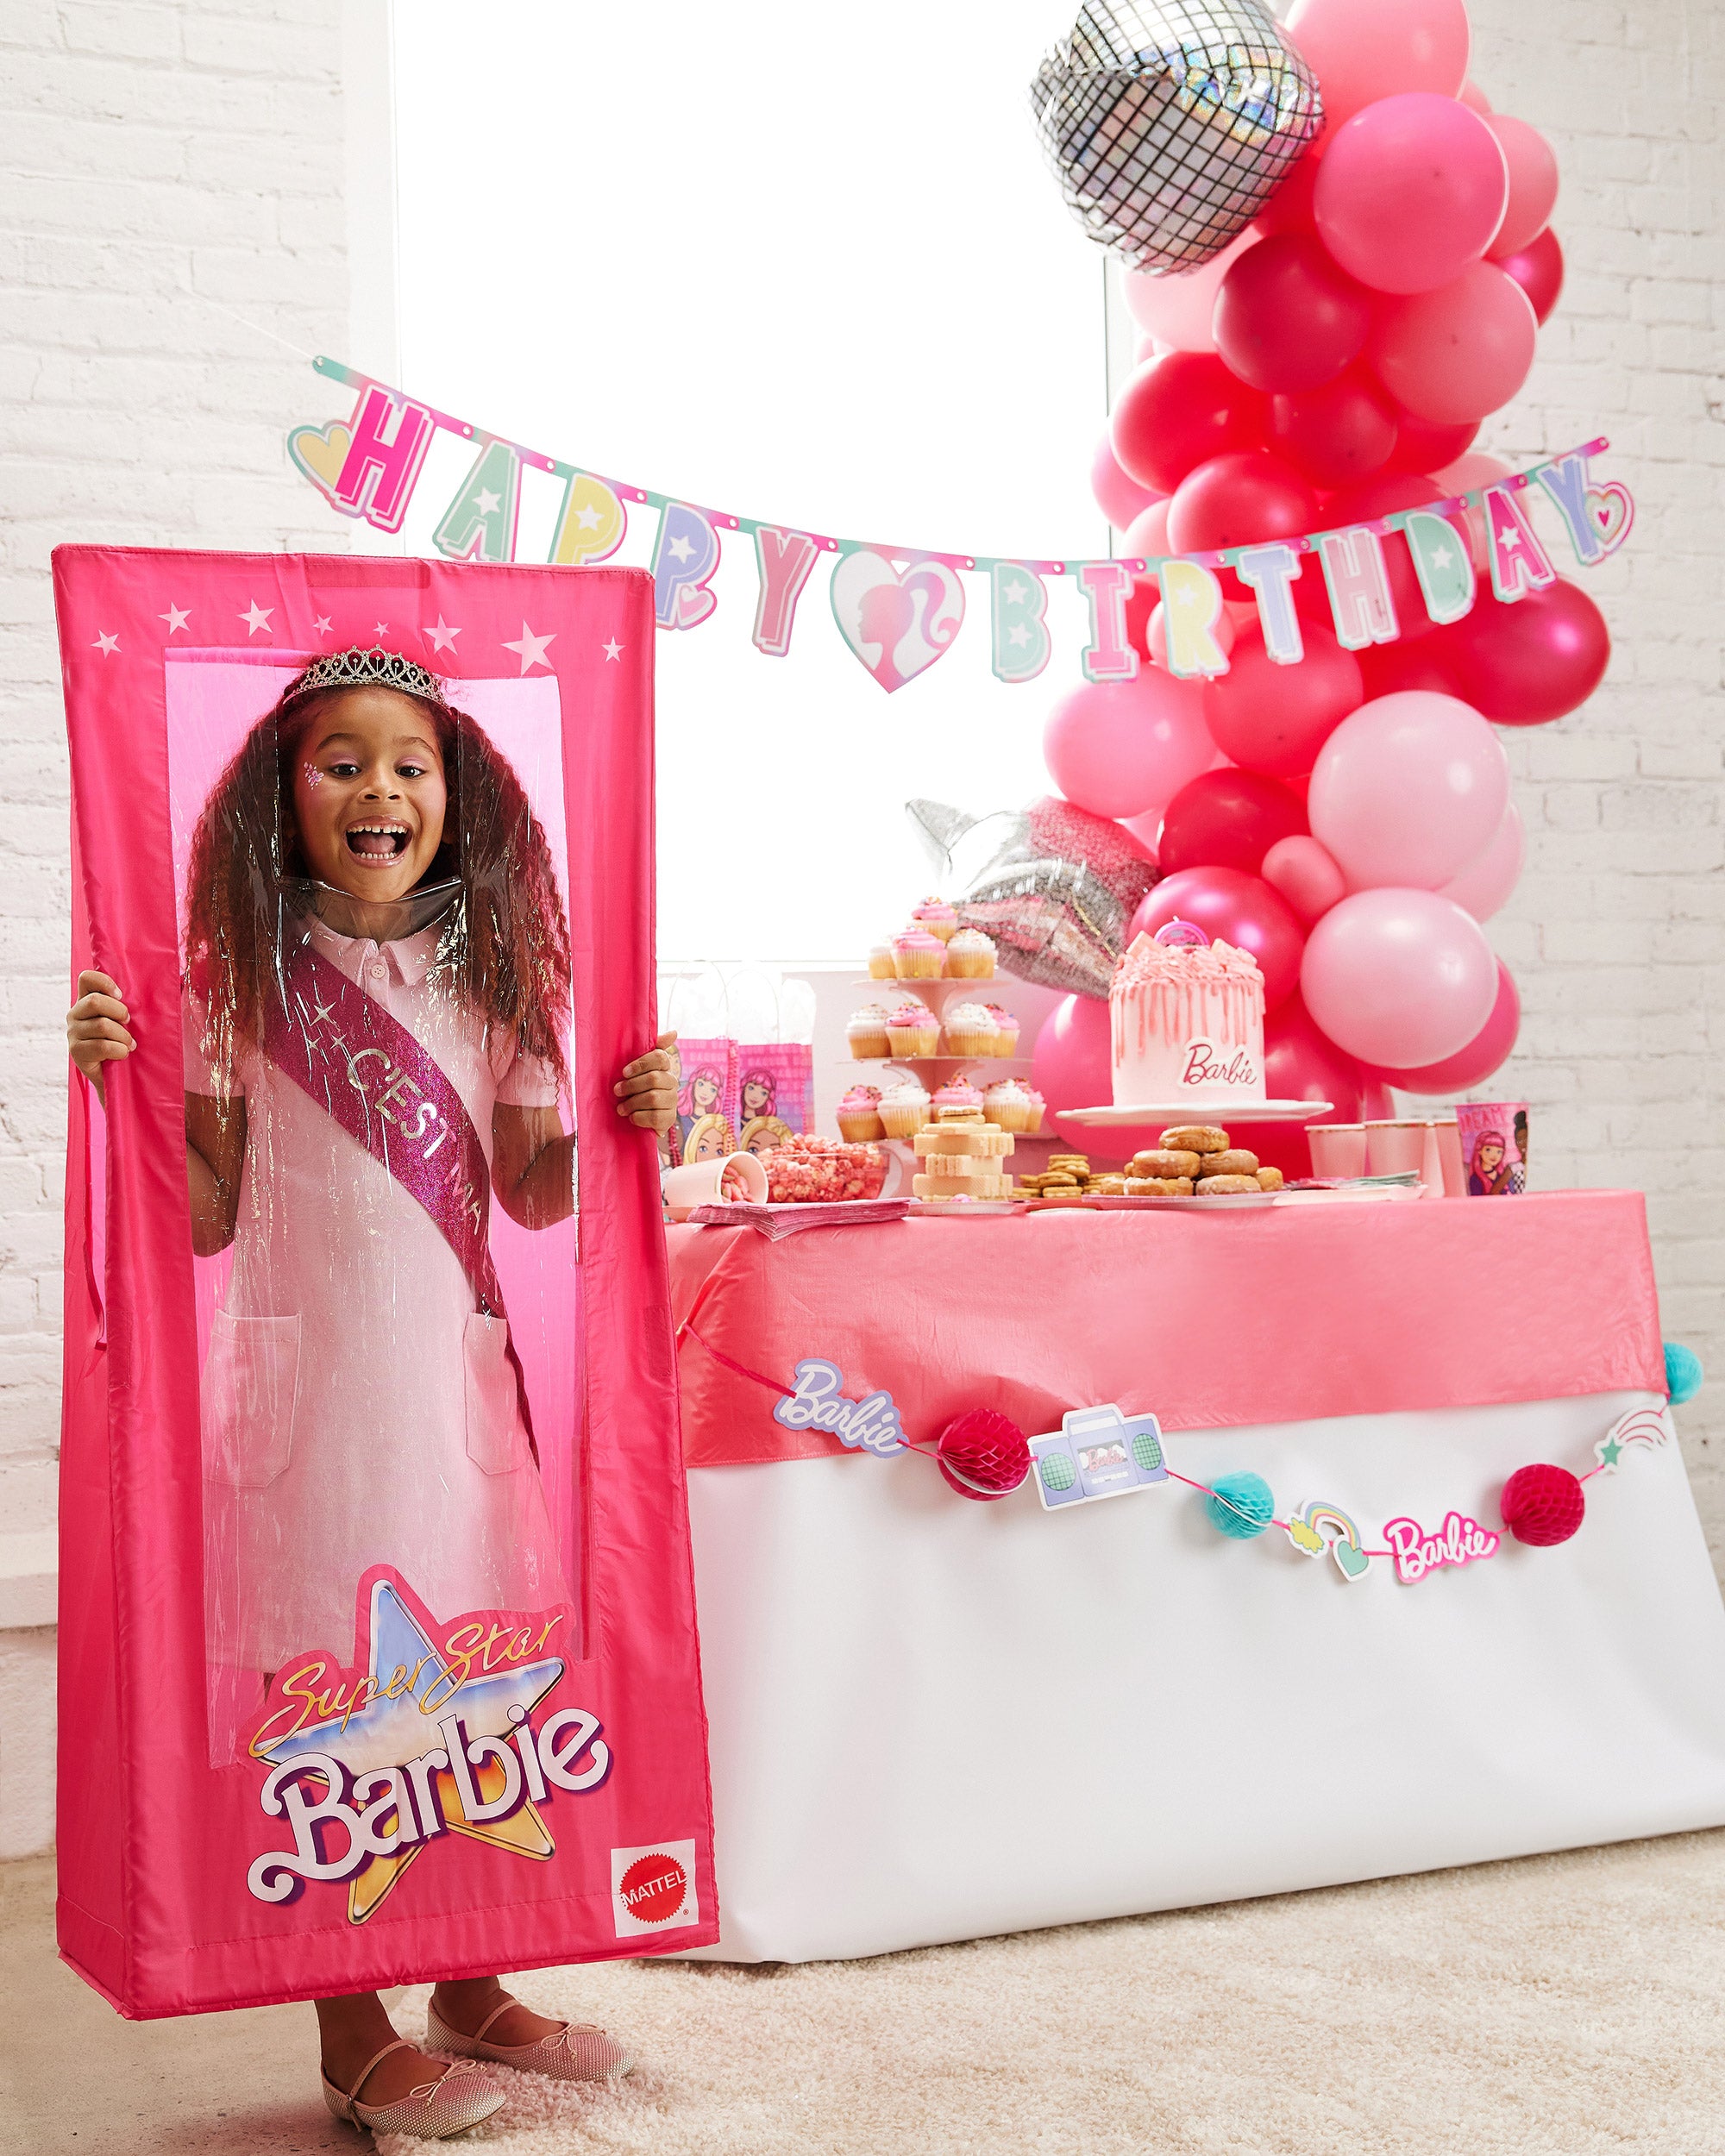 Commander votre gâteau d'anniversaire Barbie maquillage